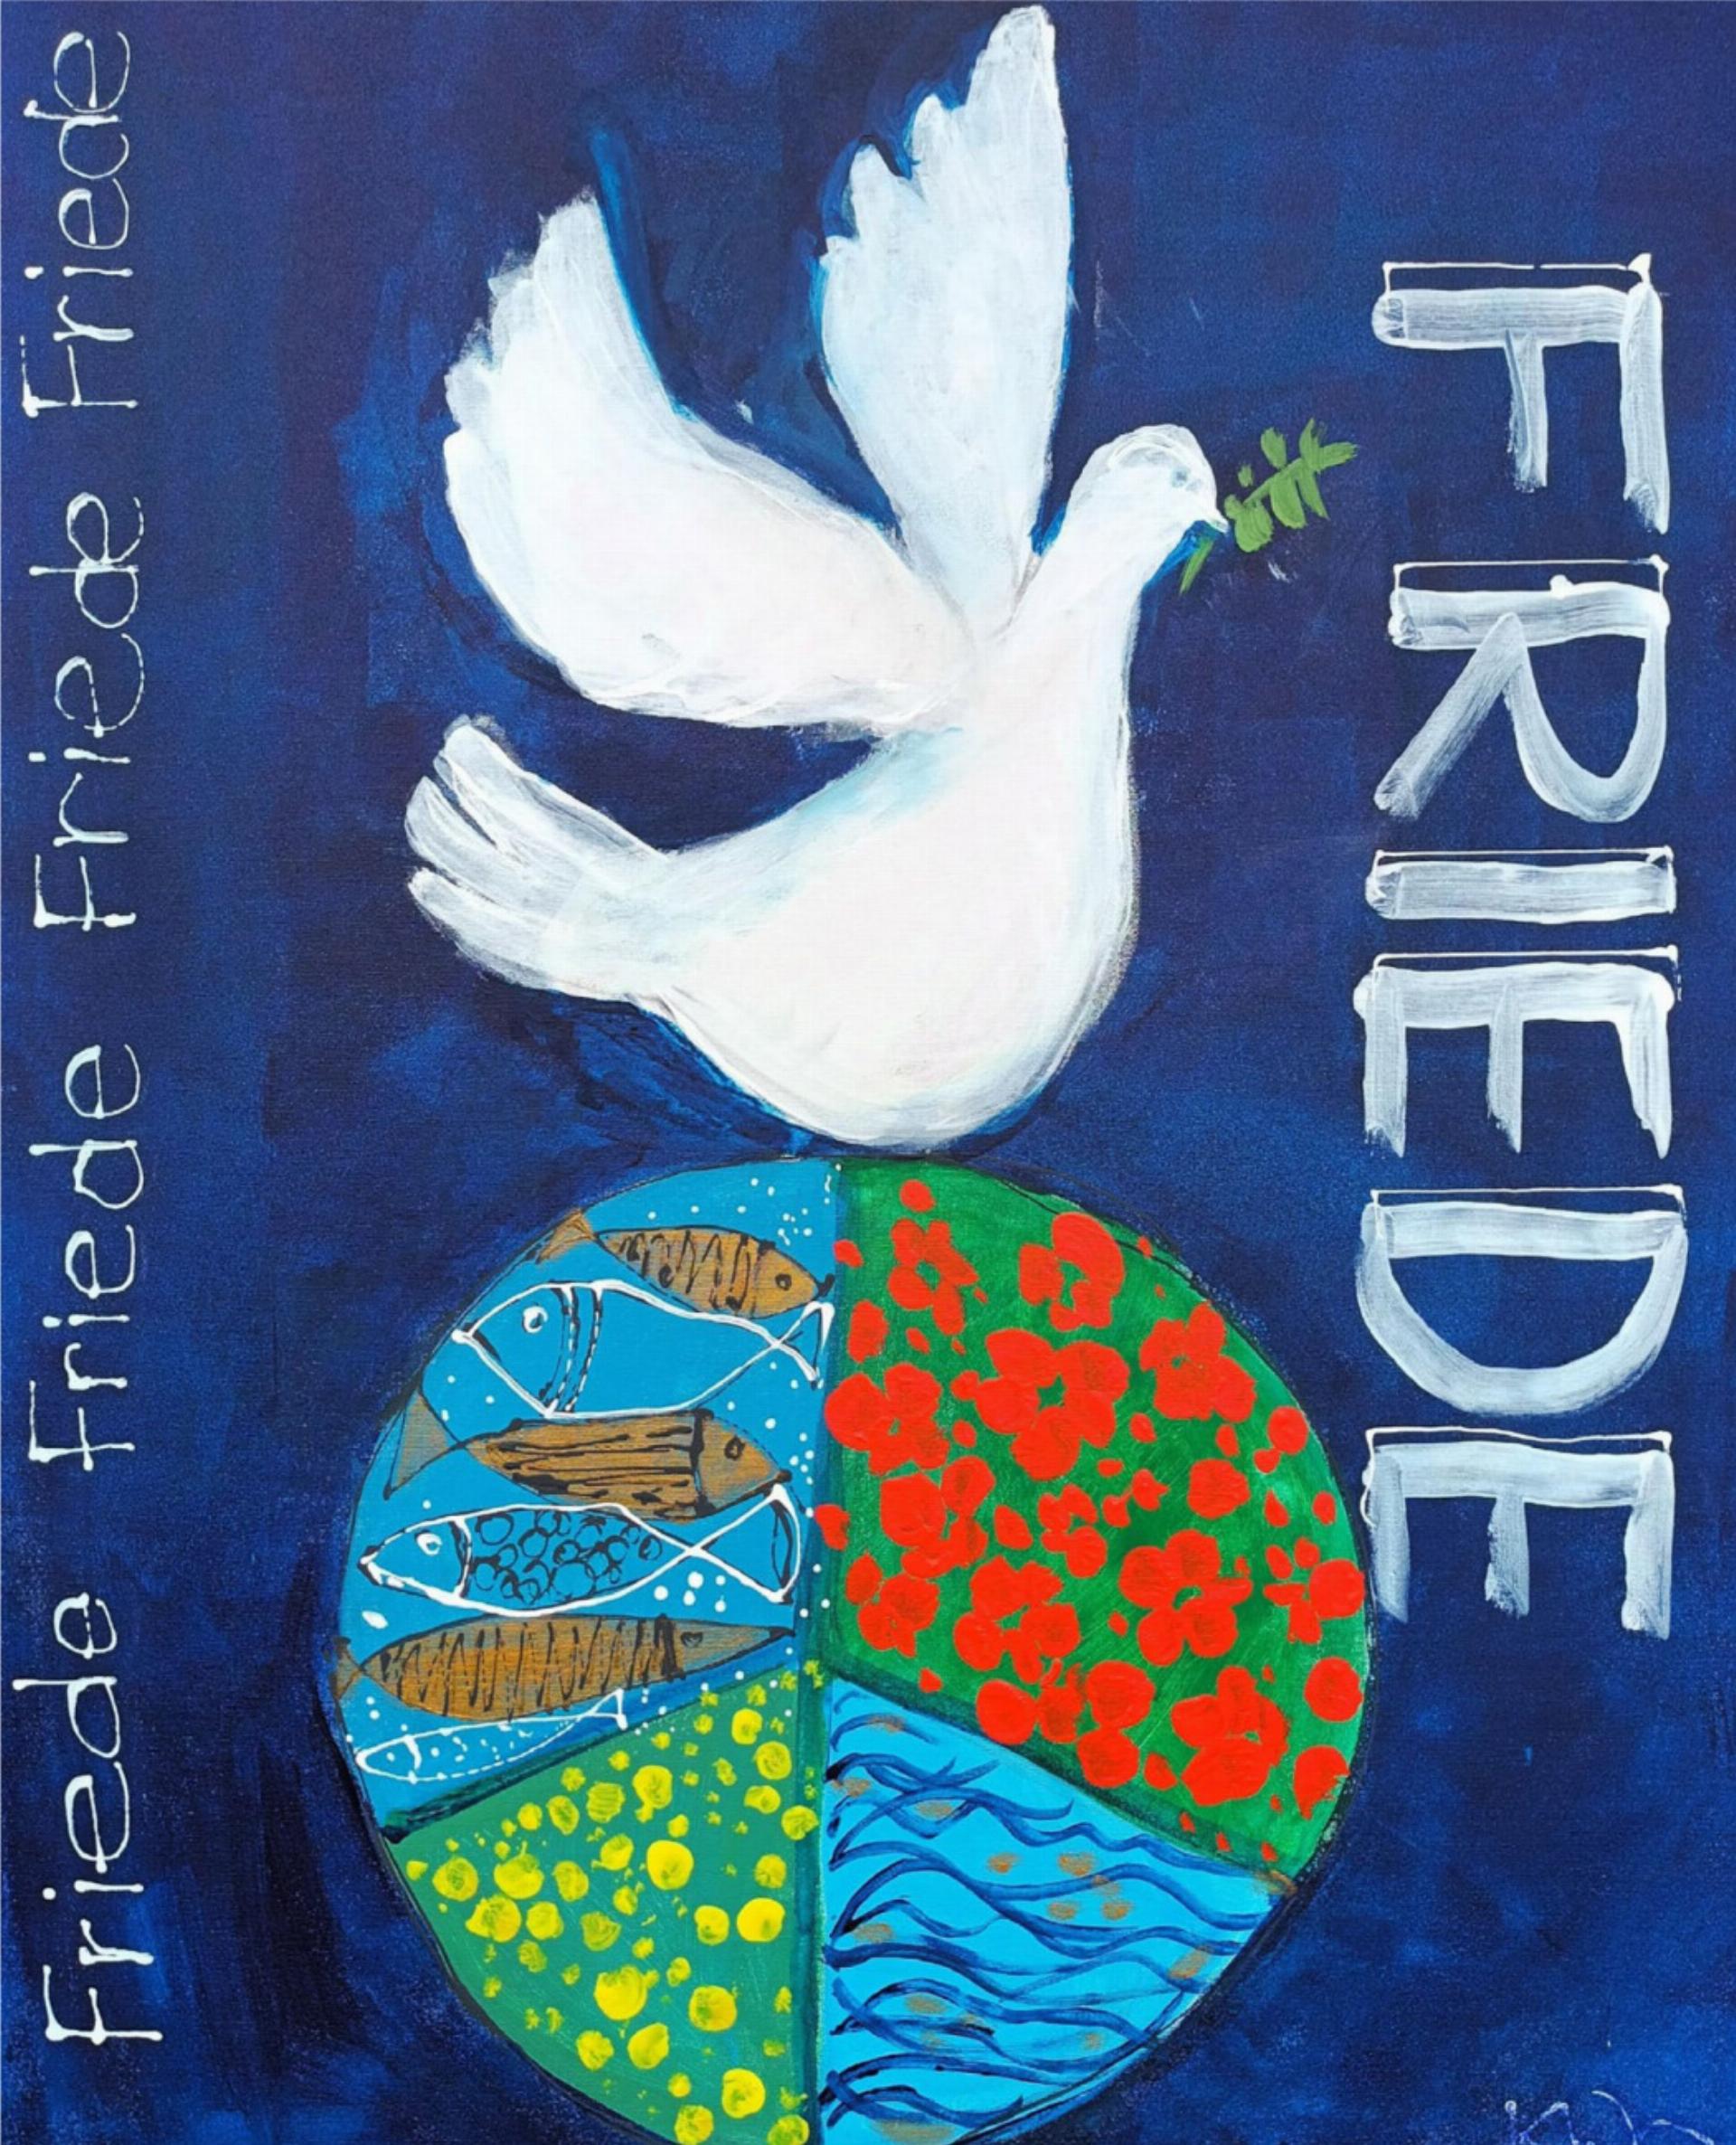 Dieses Bild hat die einheimische Künstlerin Kathrin Wandfluh im März 2023 für die geplante Friedensaktion vor der Kirche Krattigen gemalt.